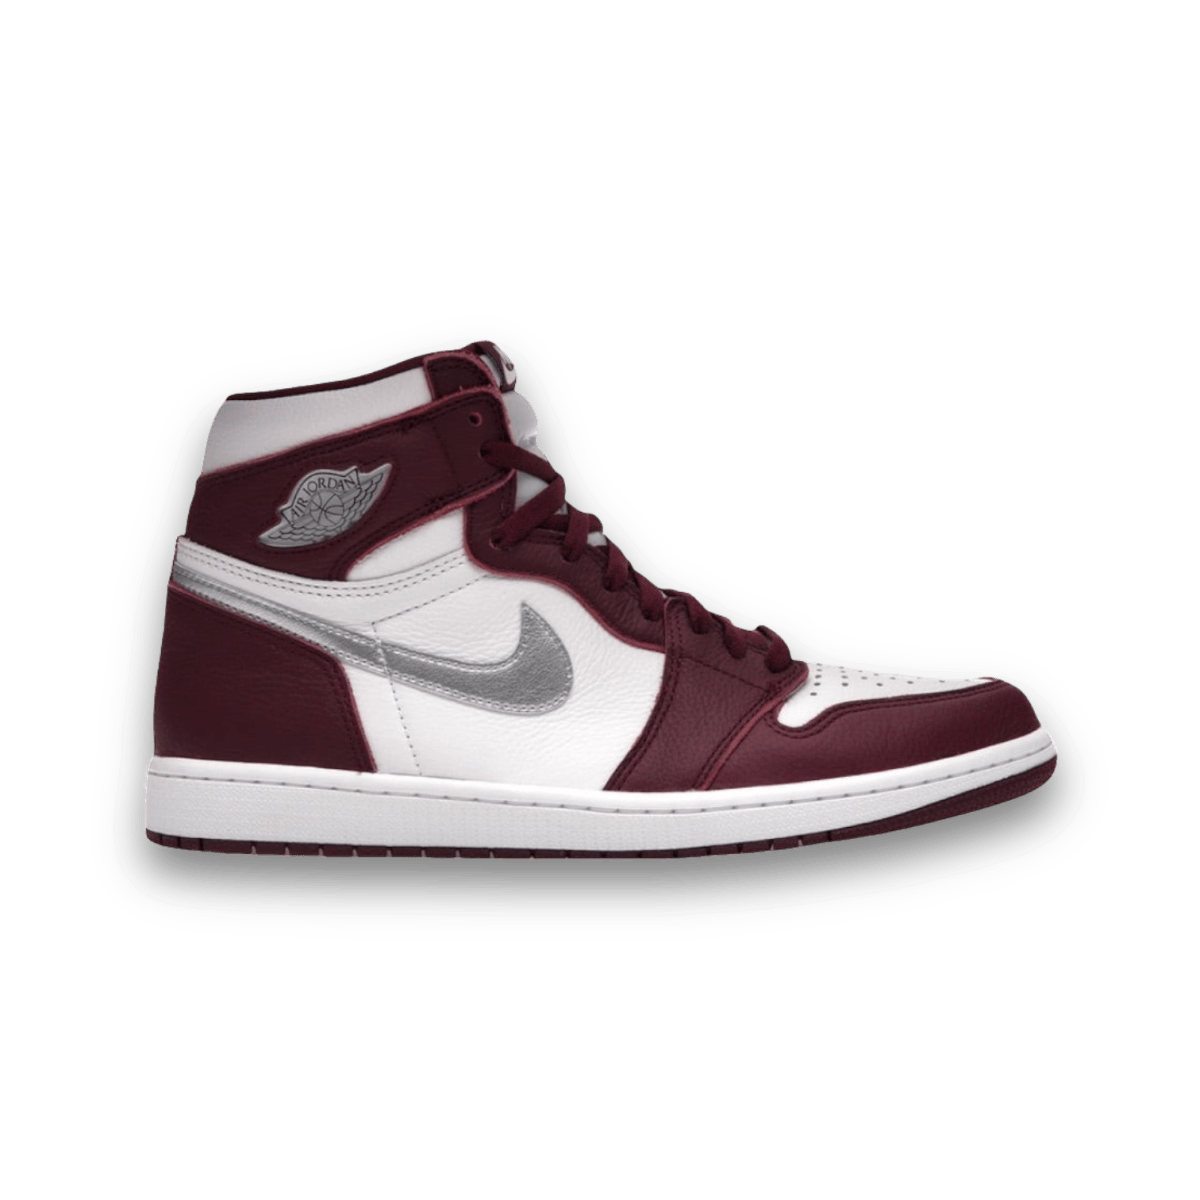 Jordan 1 Retro High OG Bordeaux - High Sneaker - Jawns on Fire Sneakers & Streetwear